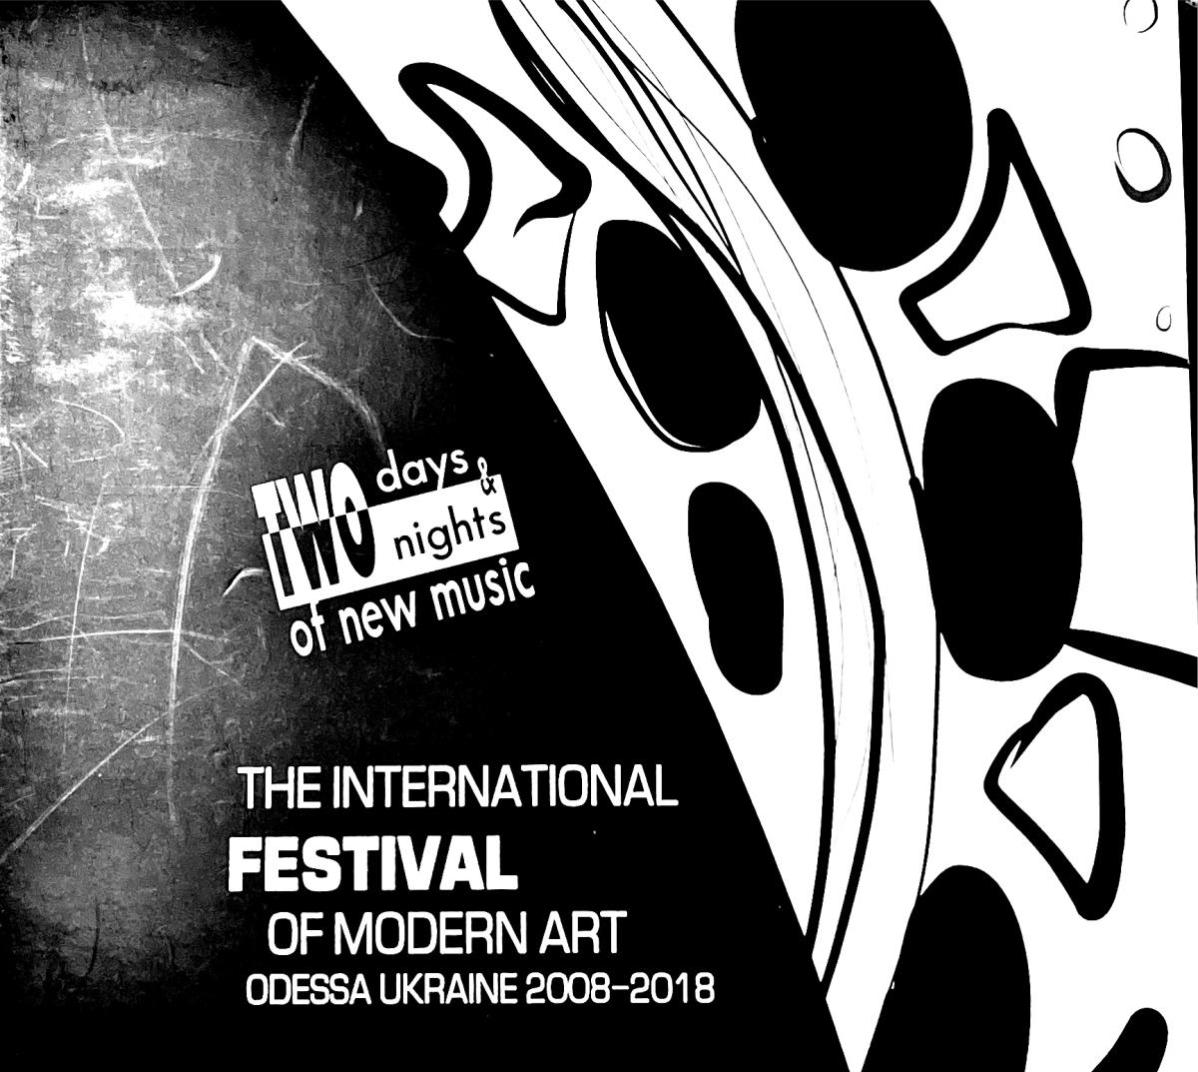 The International Festival of Modern Art - Odessa, Ukraine 2008-2018